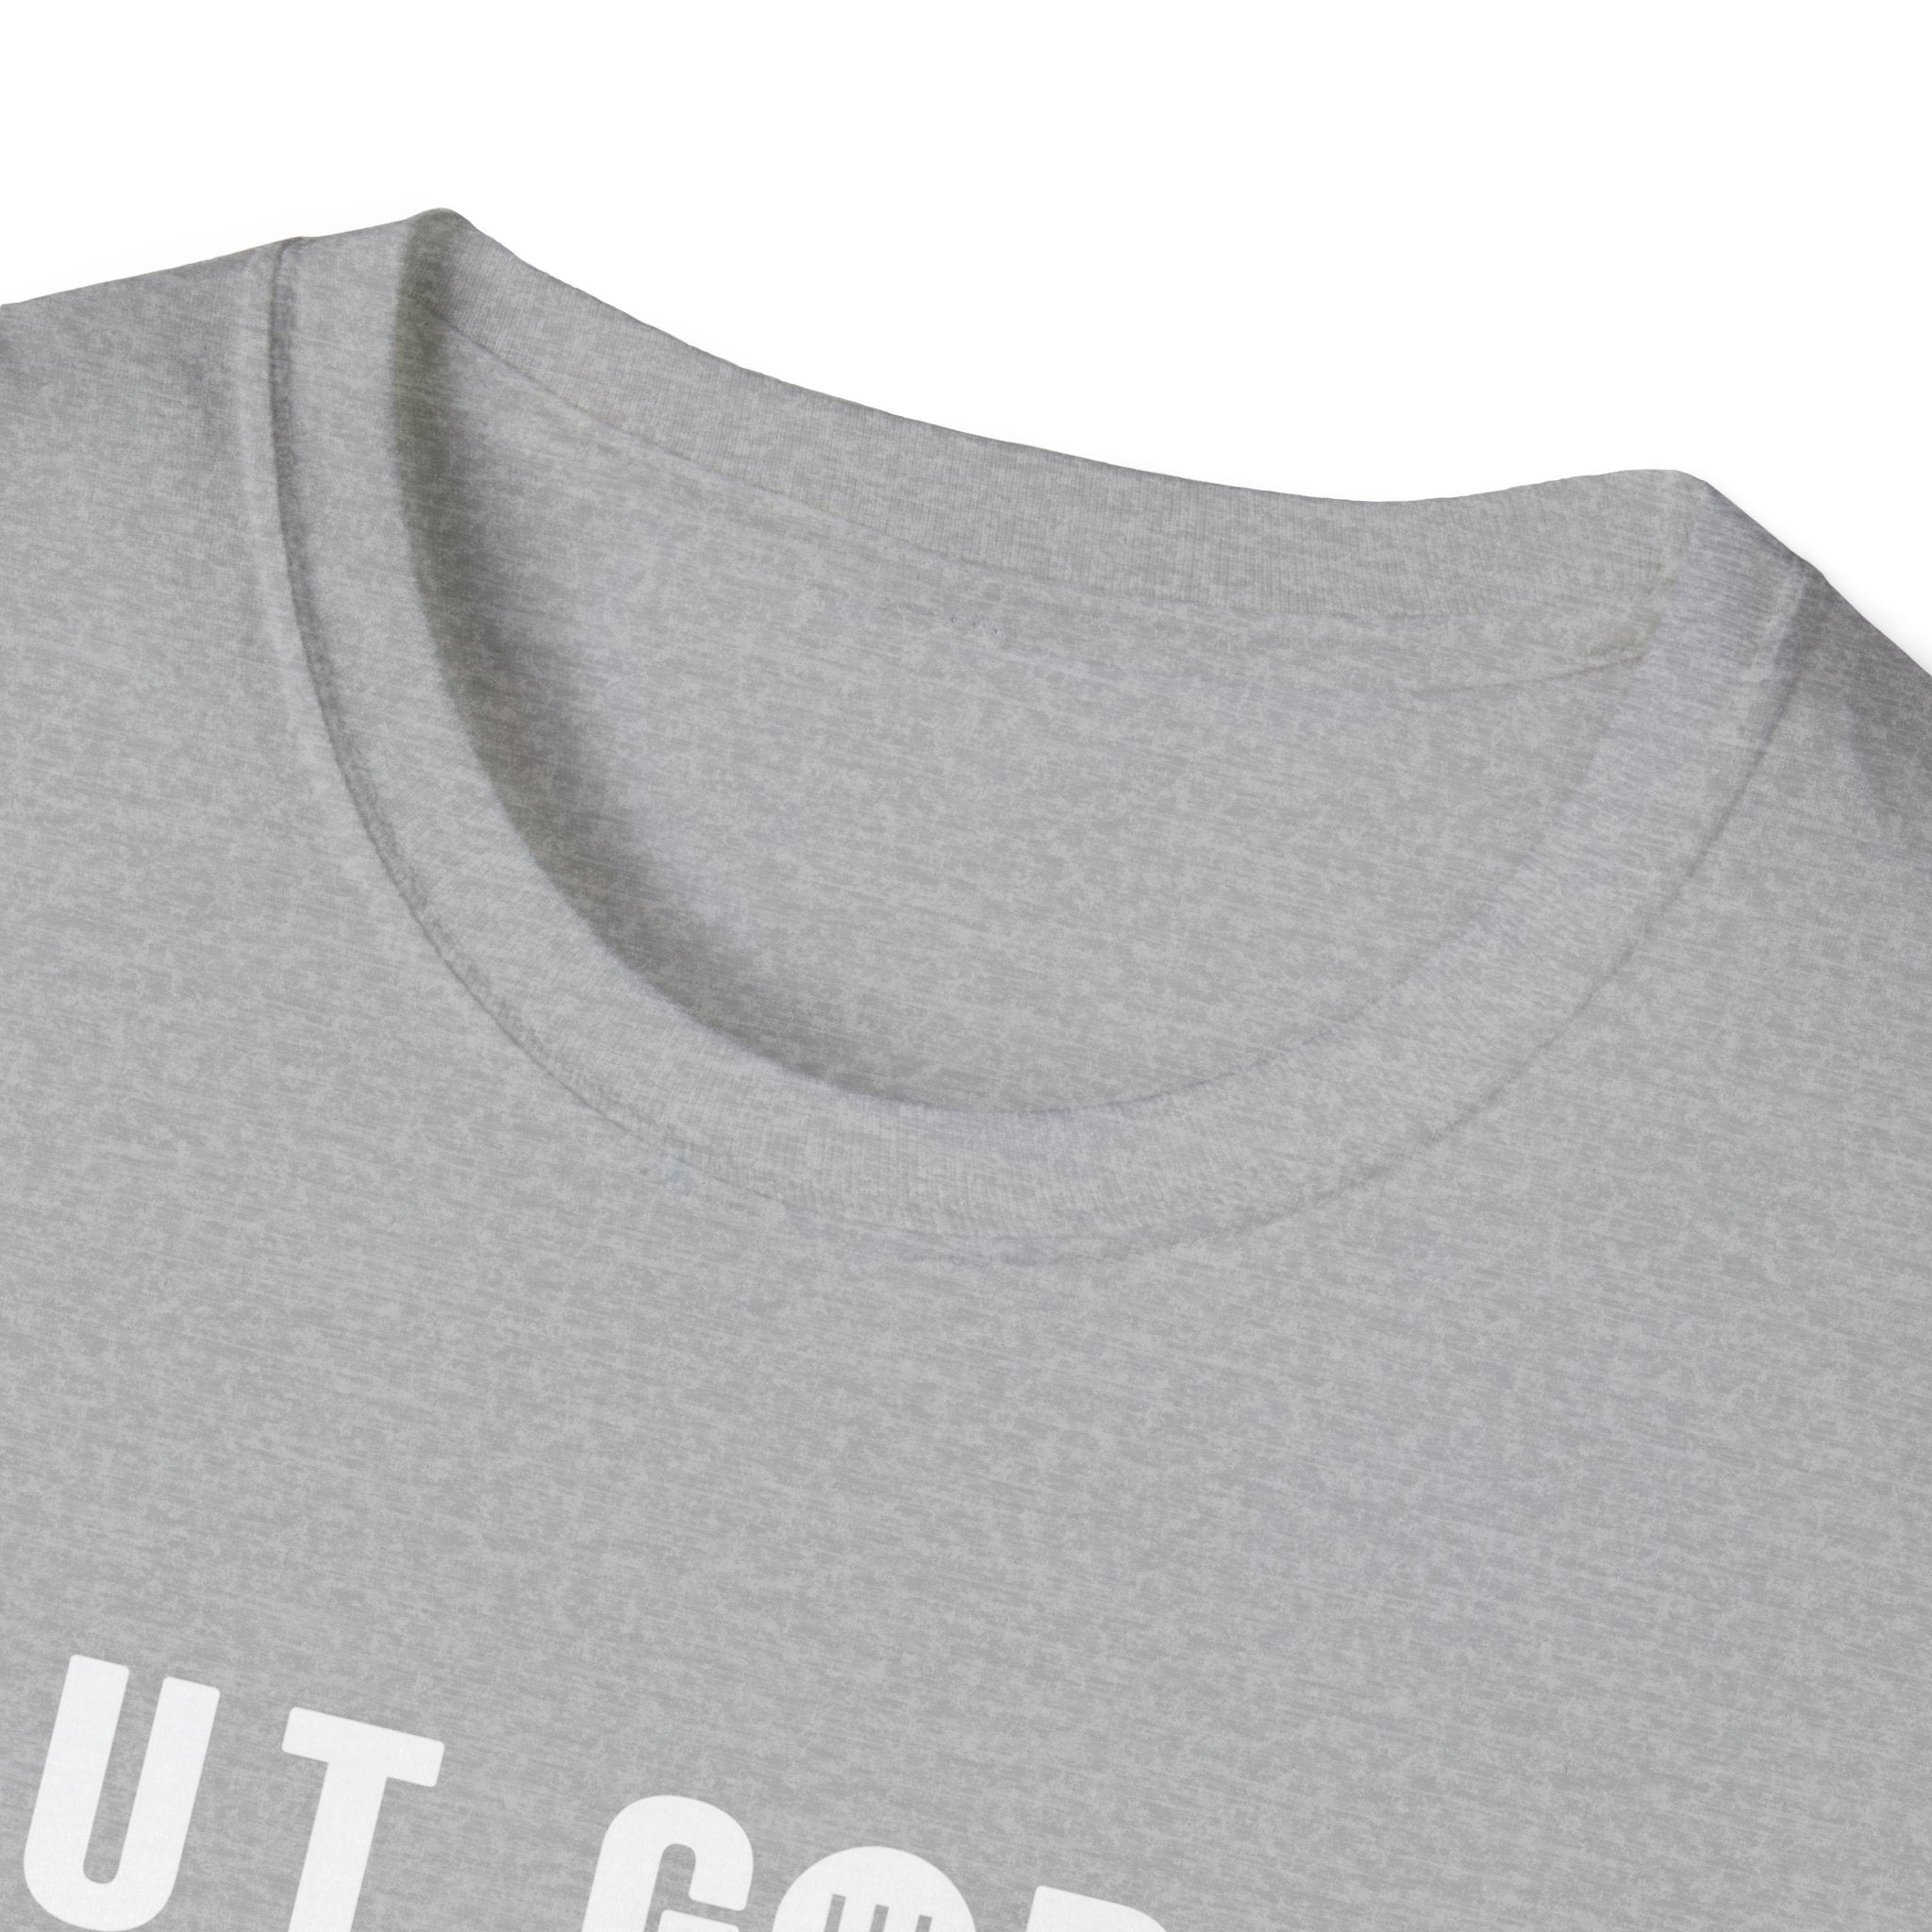 Bur God... Unisex Softstyle T-Shirt